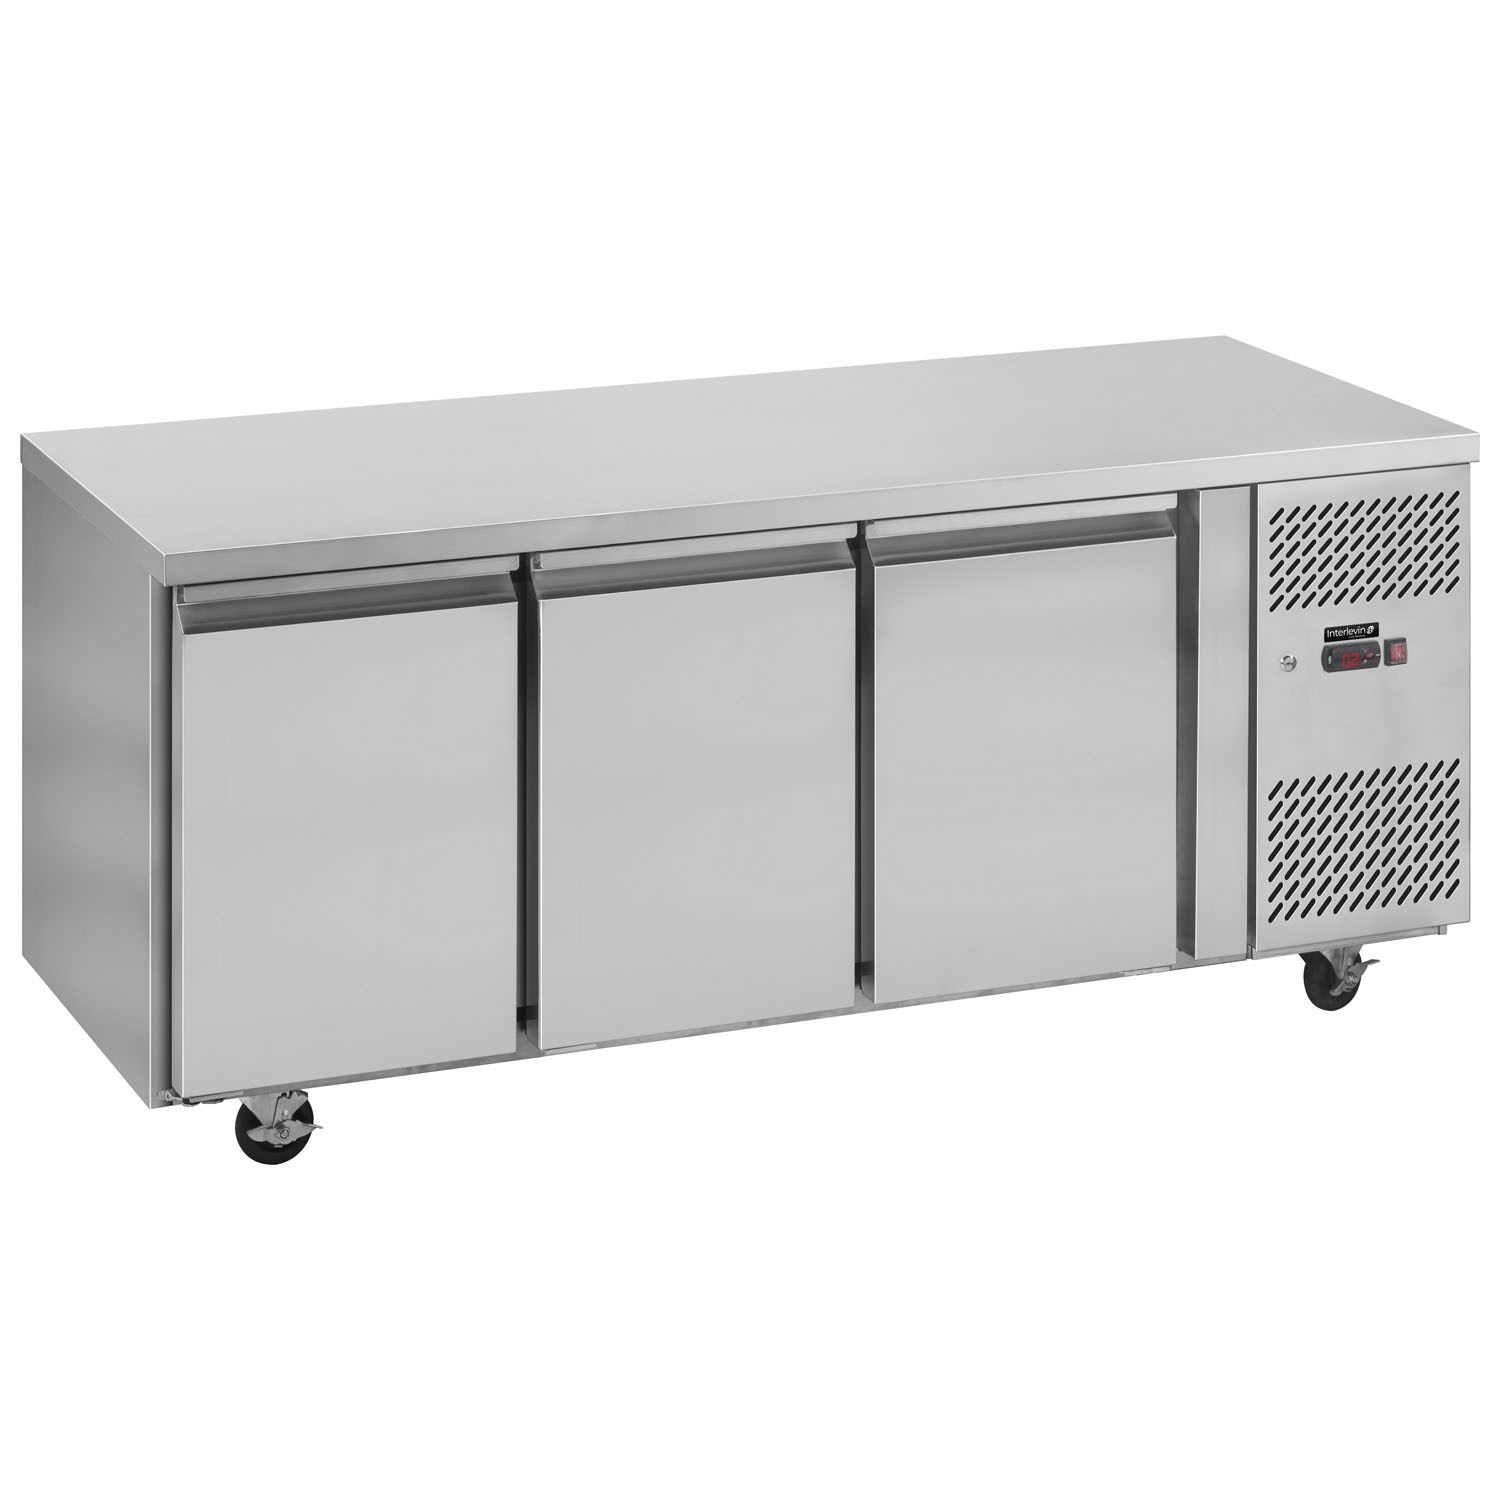 Interlevin PHF Range Gastronorm Counter Freezer 3 Doors